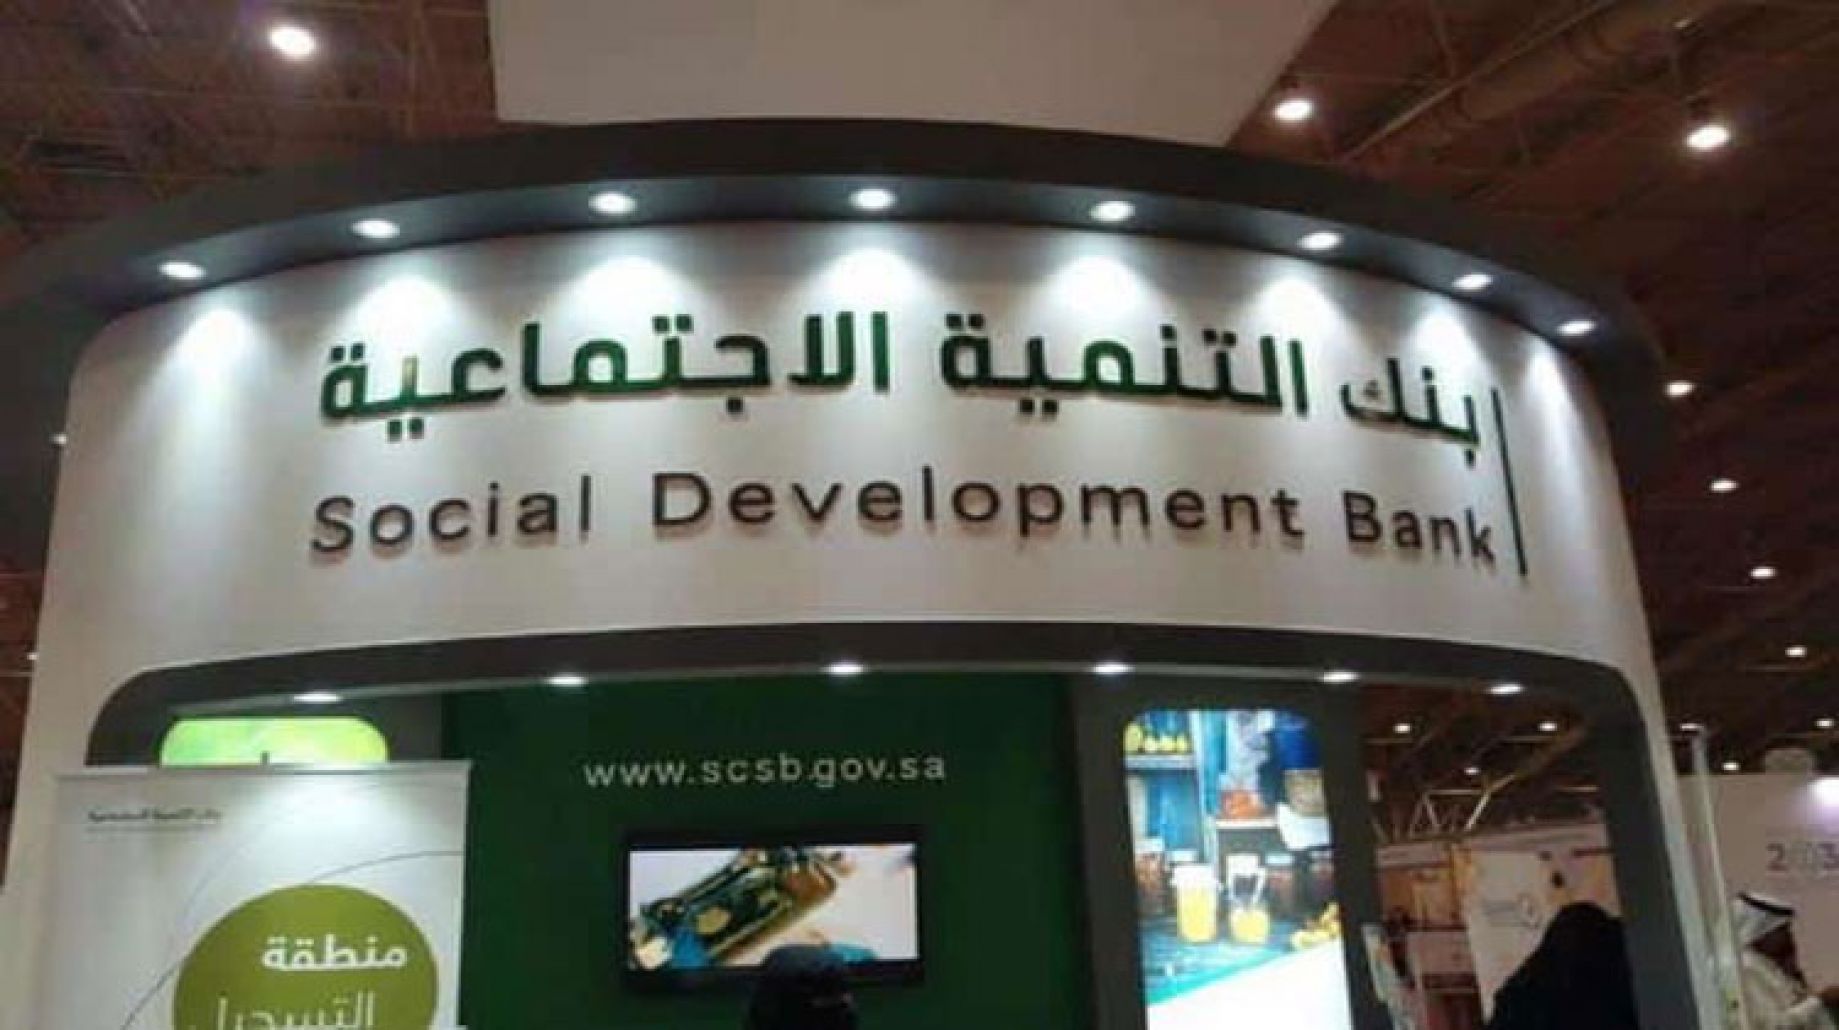 بنك التنمية الاجتماعية يعقد اتفاقية مع وزارة الموارد البشرية